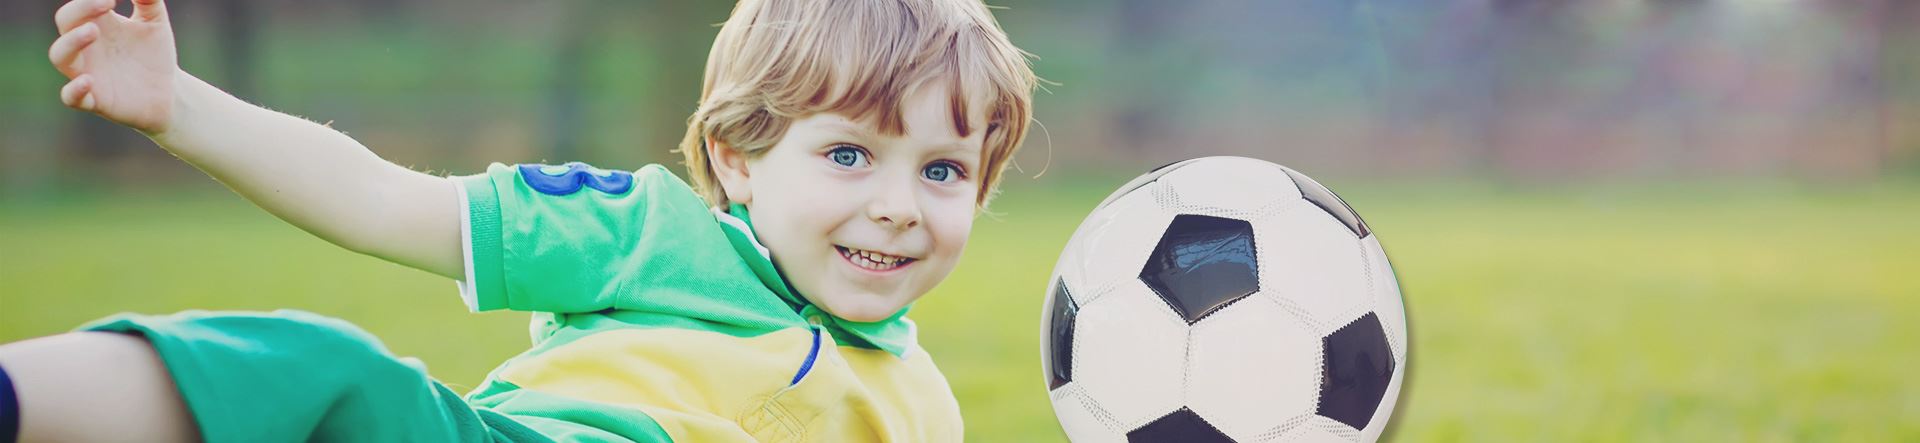 Quando colocar seu filho no futebol? Conheça os benefícios